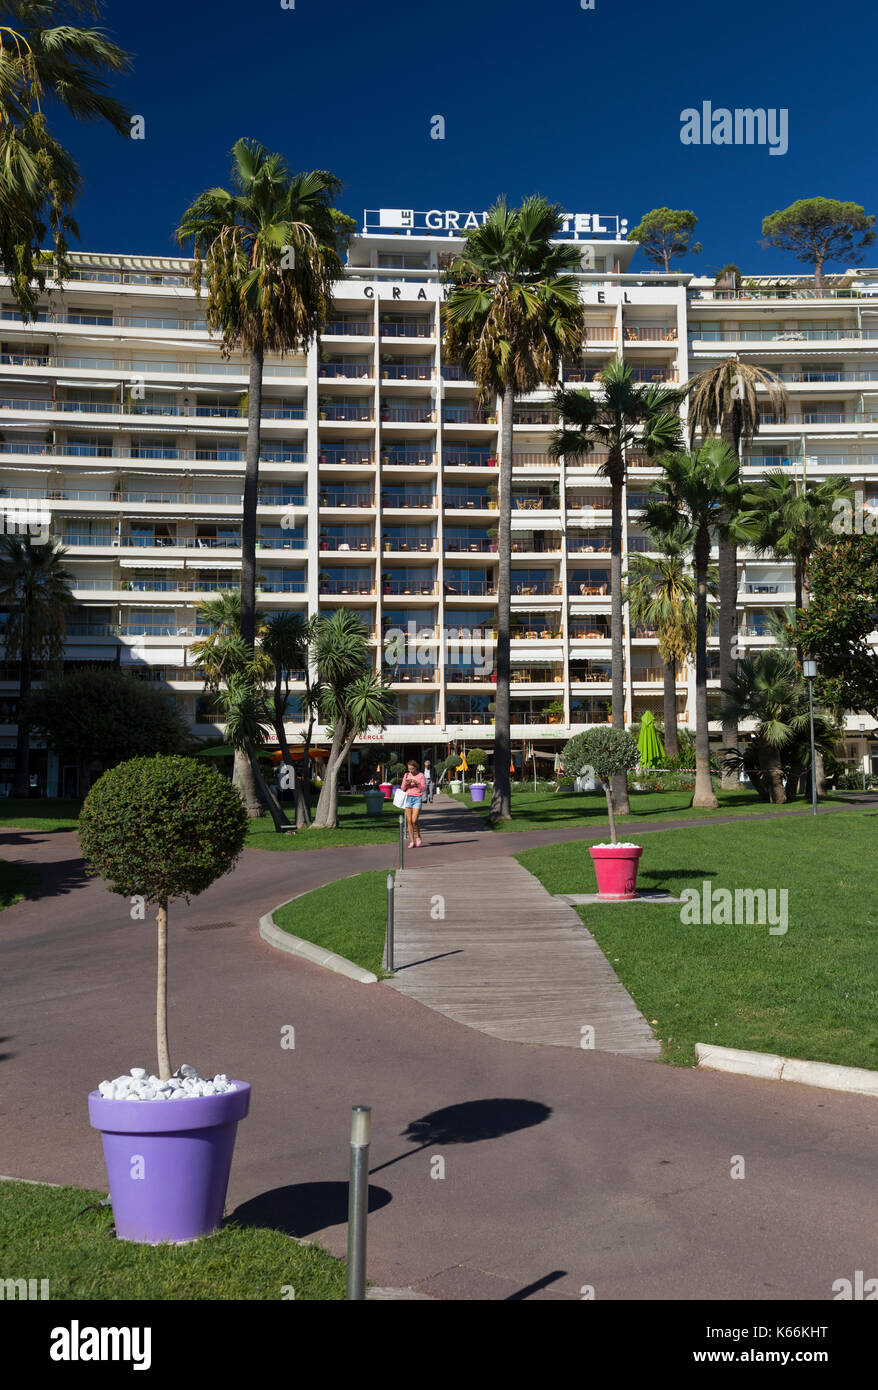 Entrance to the Grand Hotel, Boulevard de la Croisette, Cannes, France Stock Photo